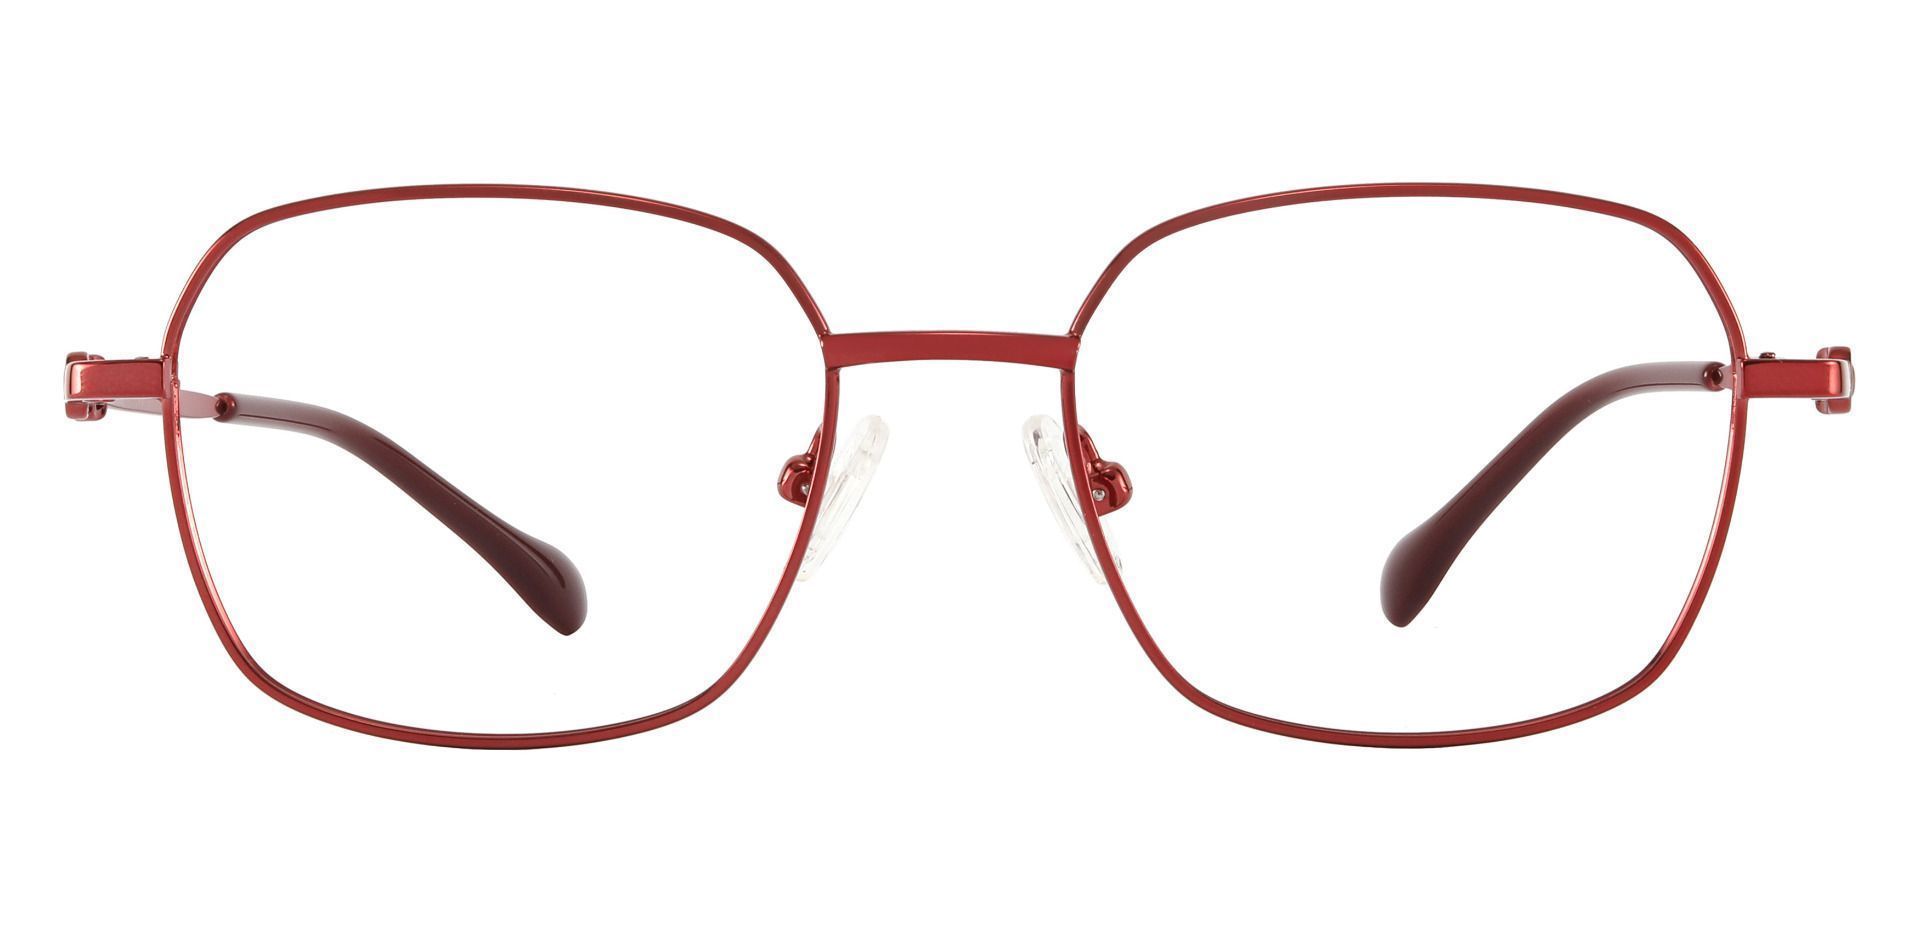 Averill Geometric Prescription Glasses - Red